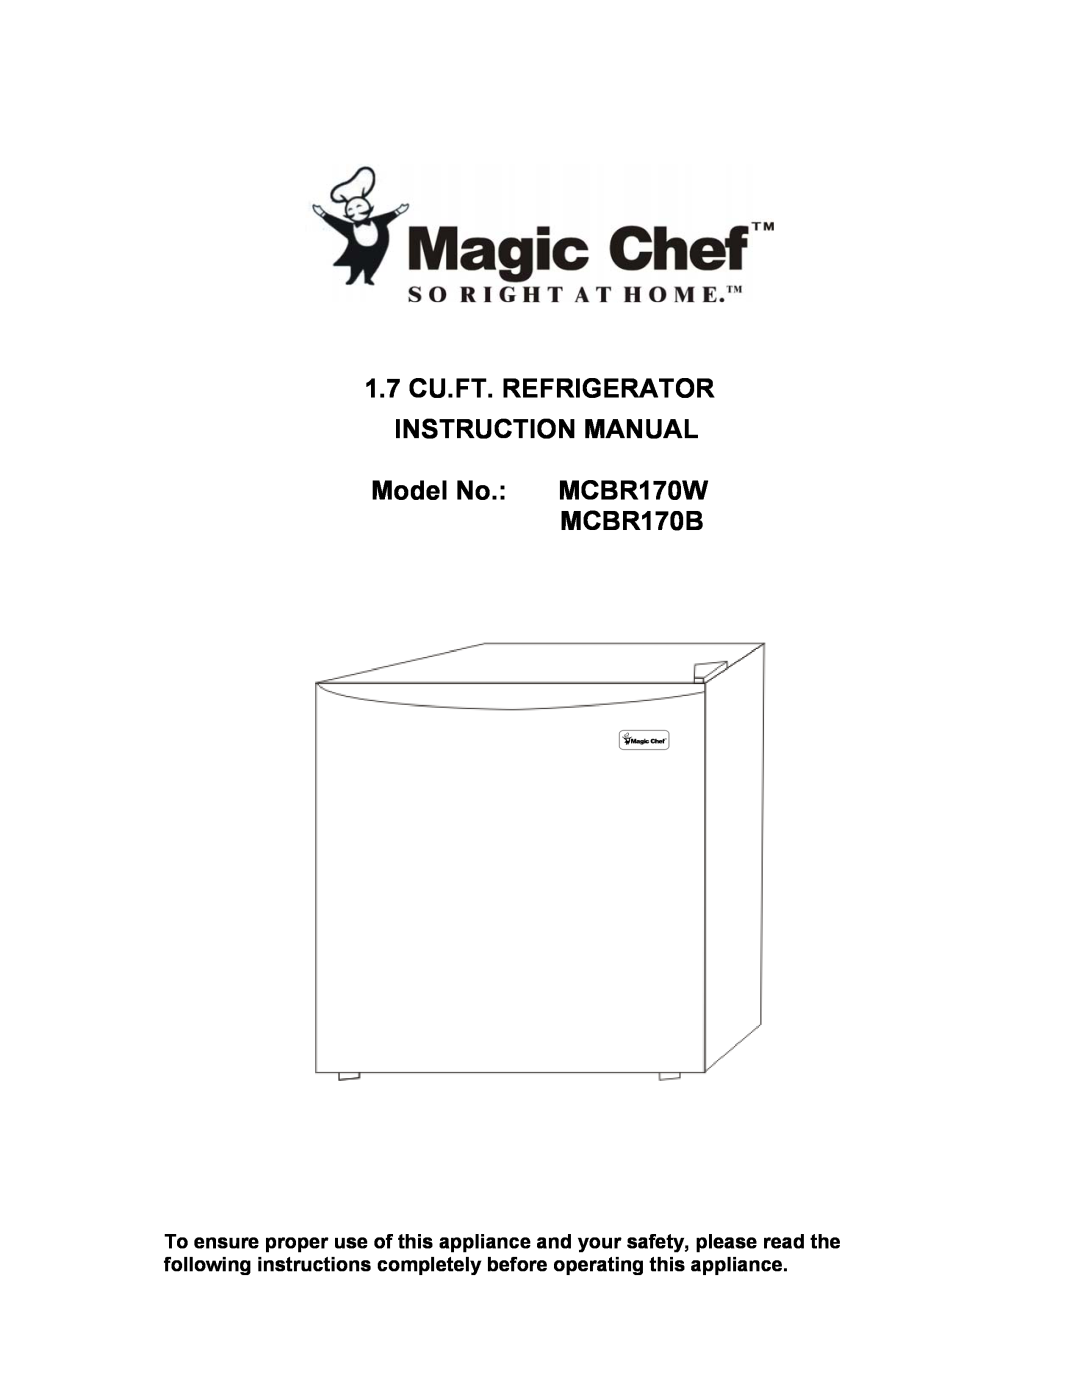 Magic Chef instruction manual Model No. MCBR170W MCBR170B 